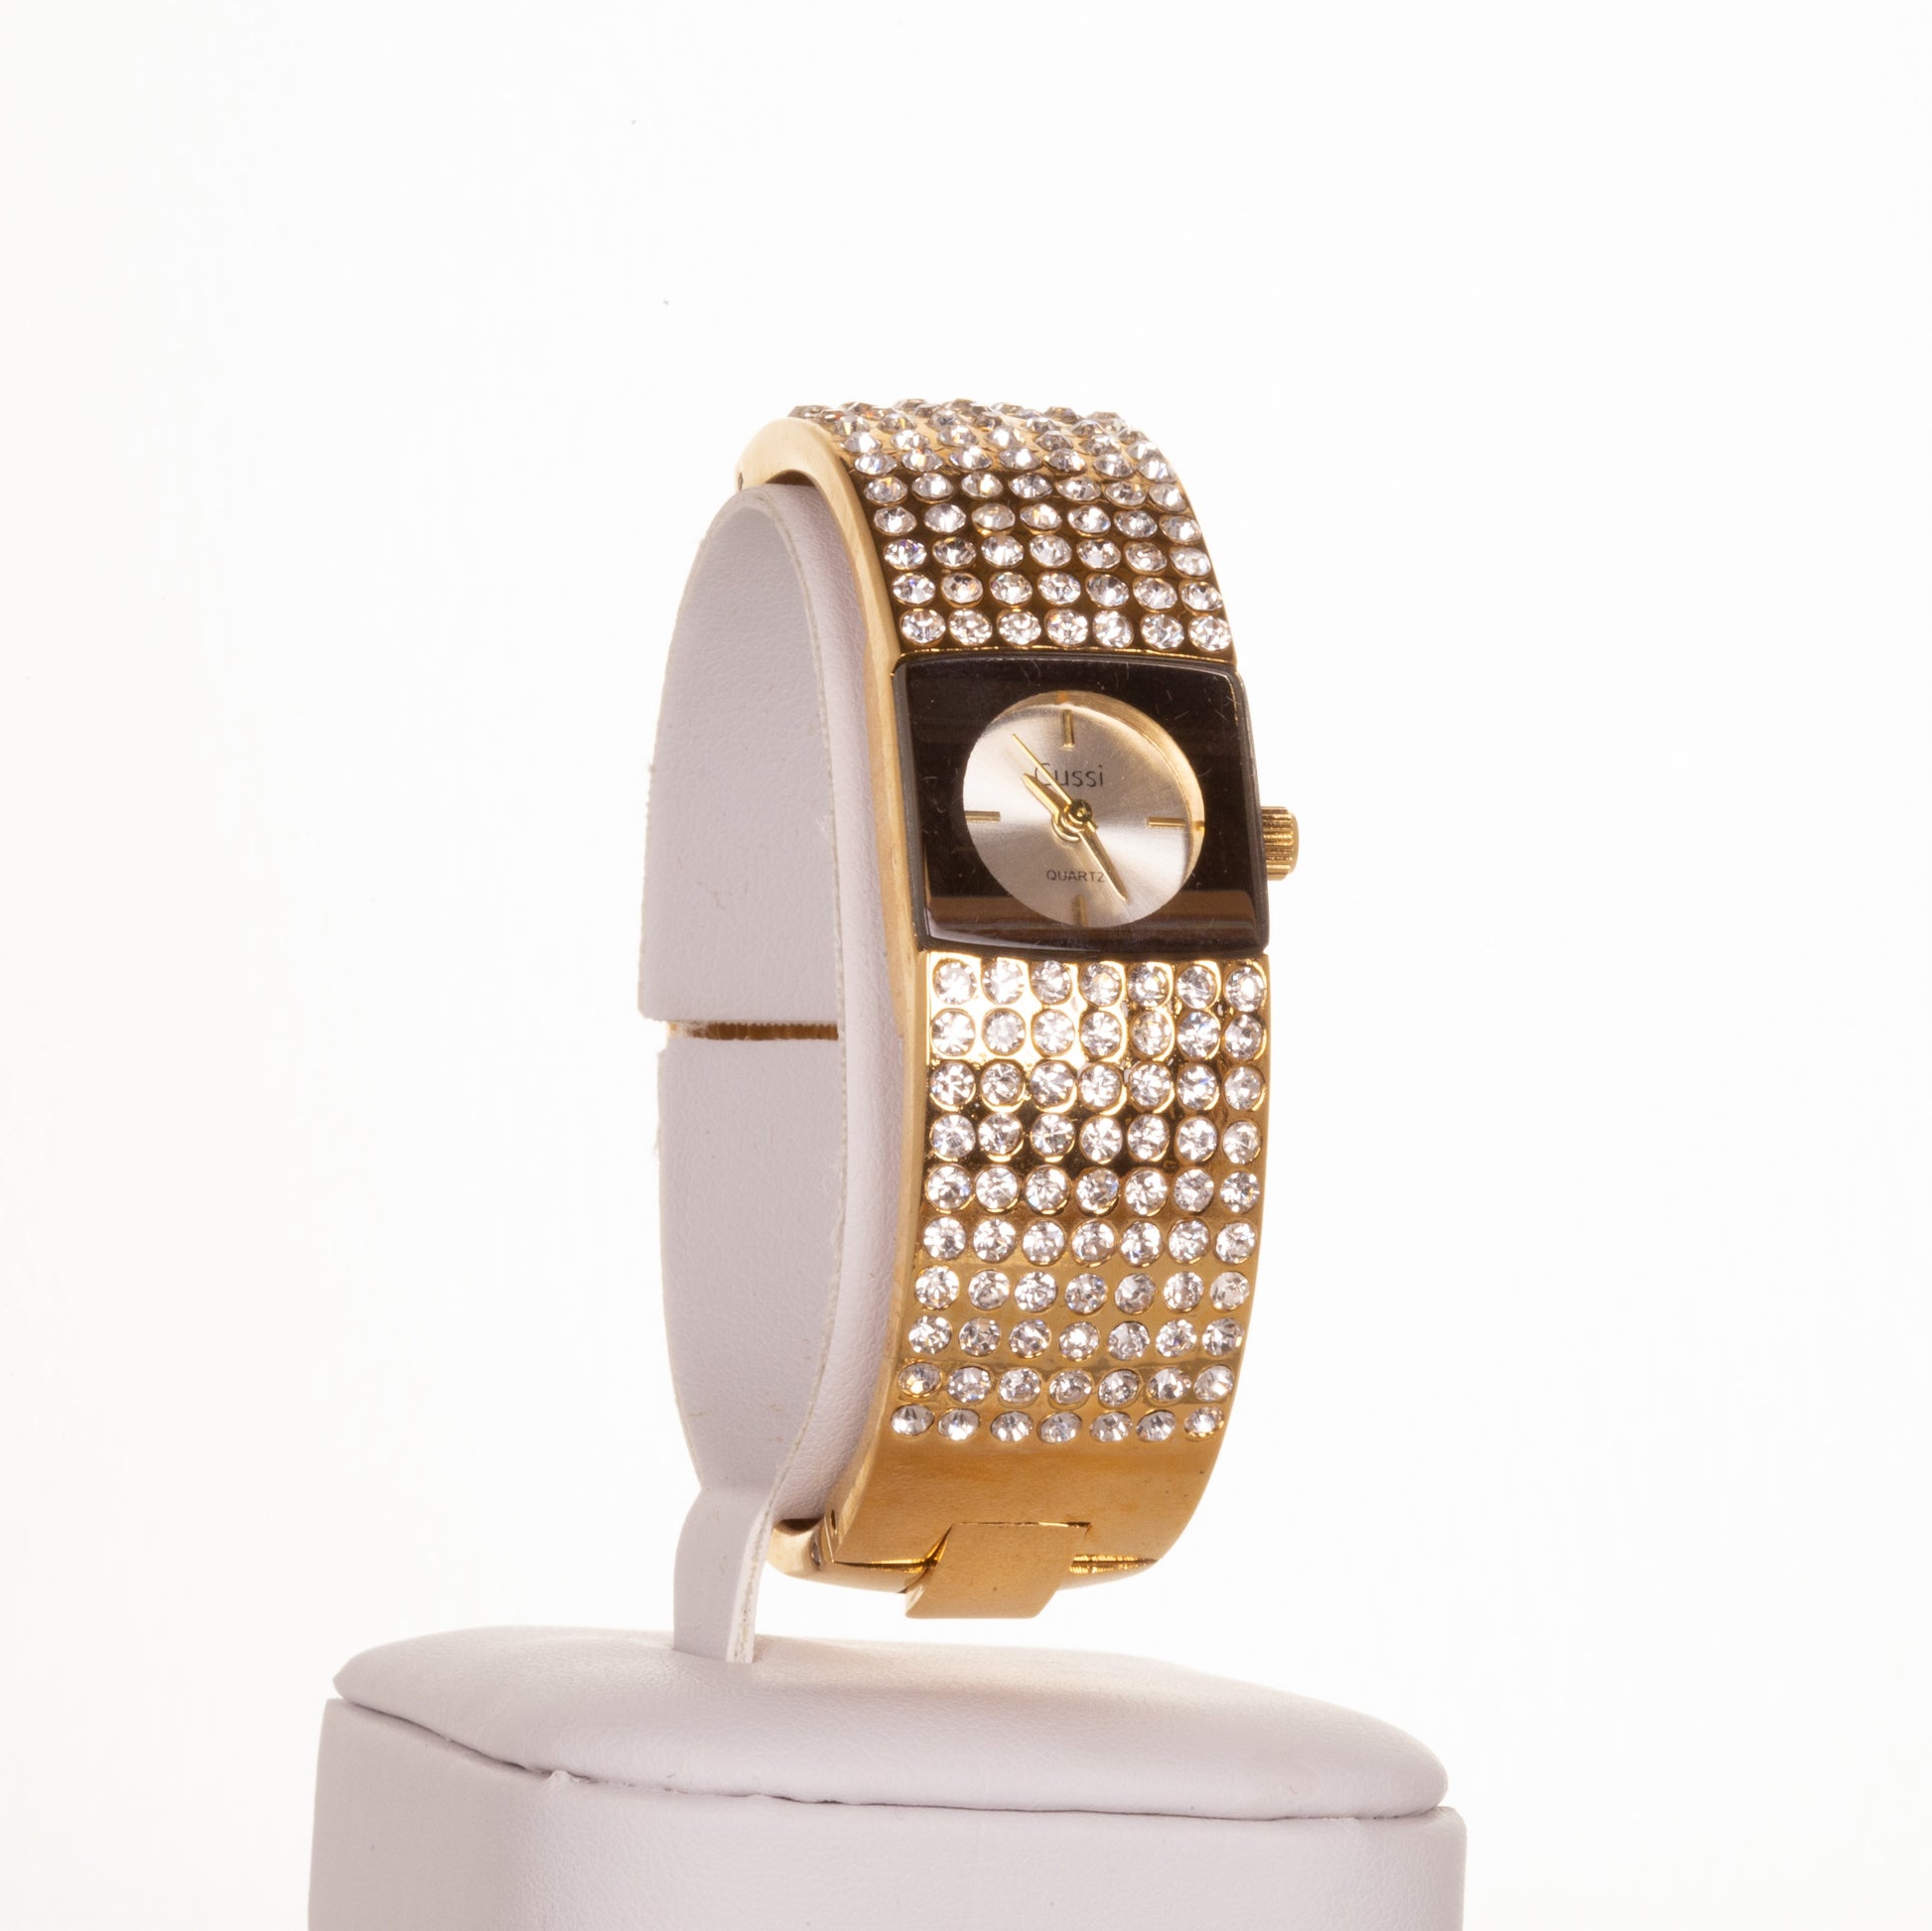 CUSSI dámské hodinky ve zlaté barvě se 7 řadami krystalů křemene | -80% Akce na Šperky